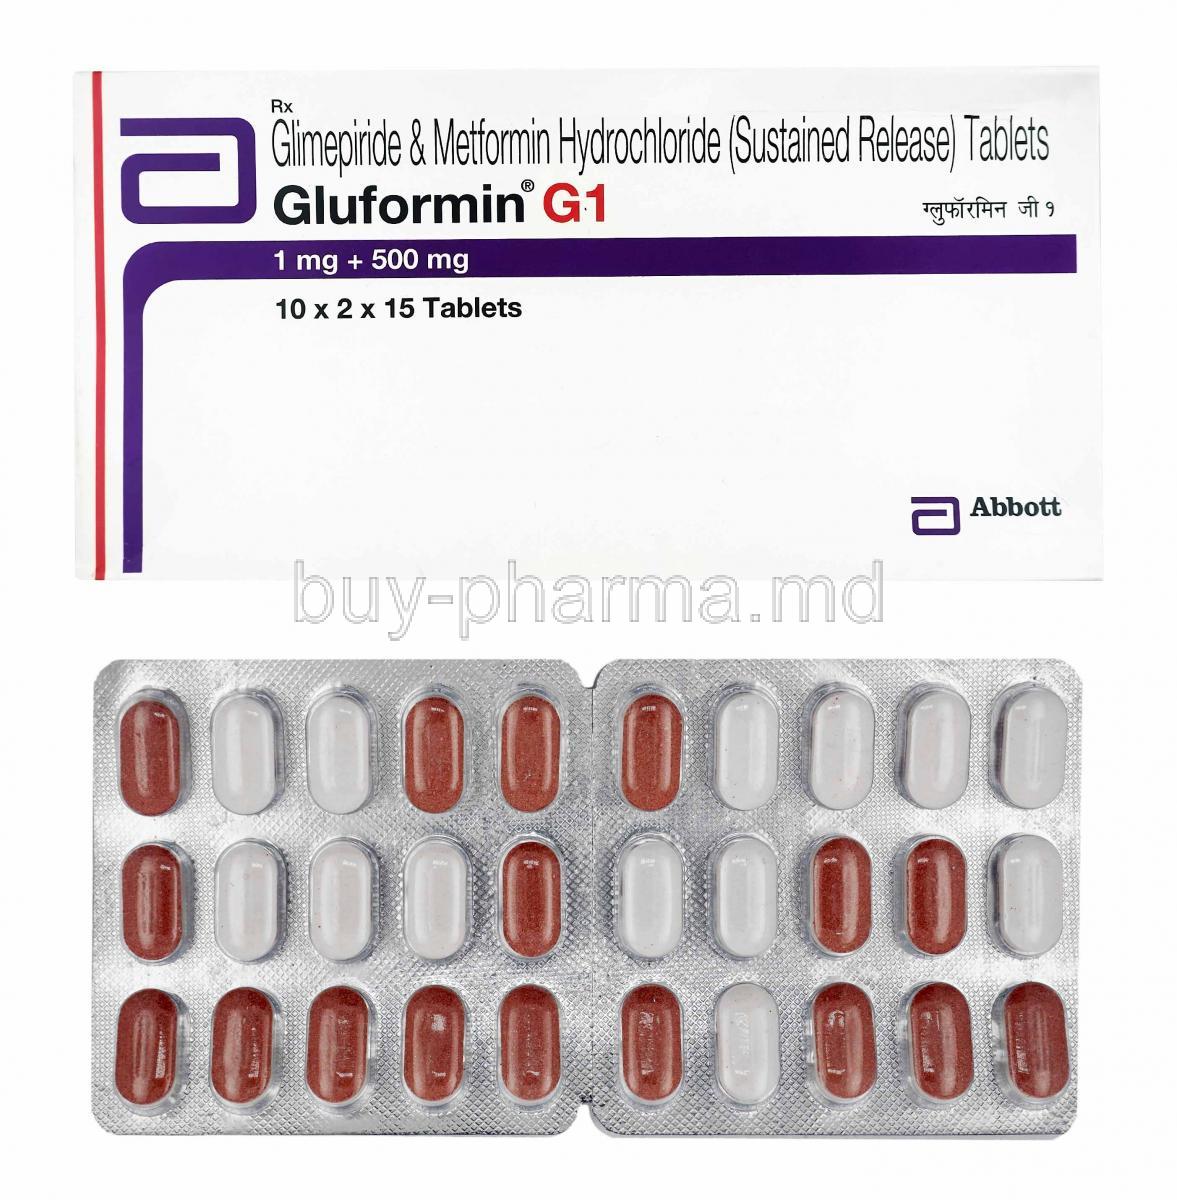 Gluformin G, Glimepiride 1mg and Metformin 500mg box and tablets